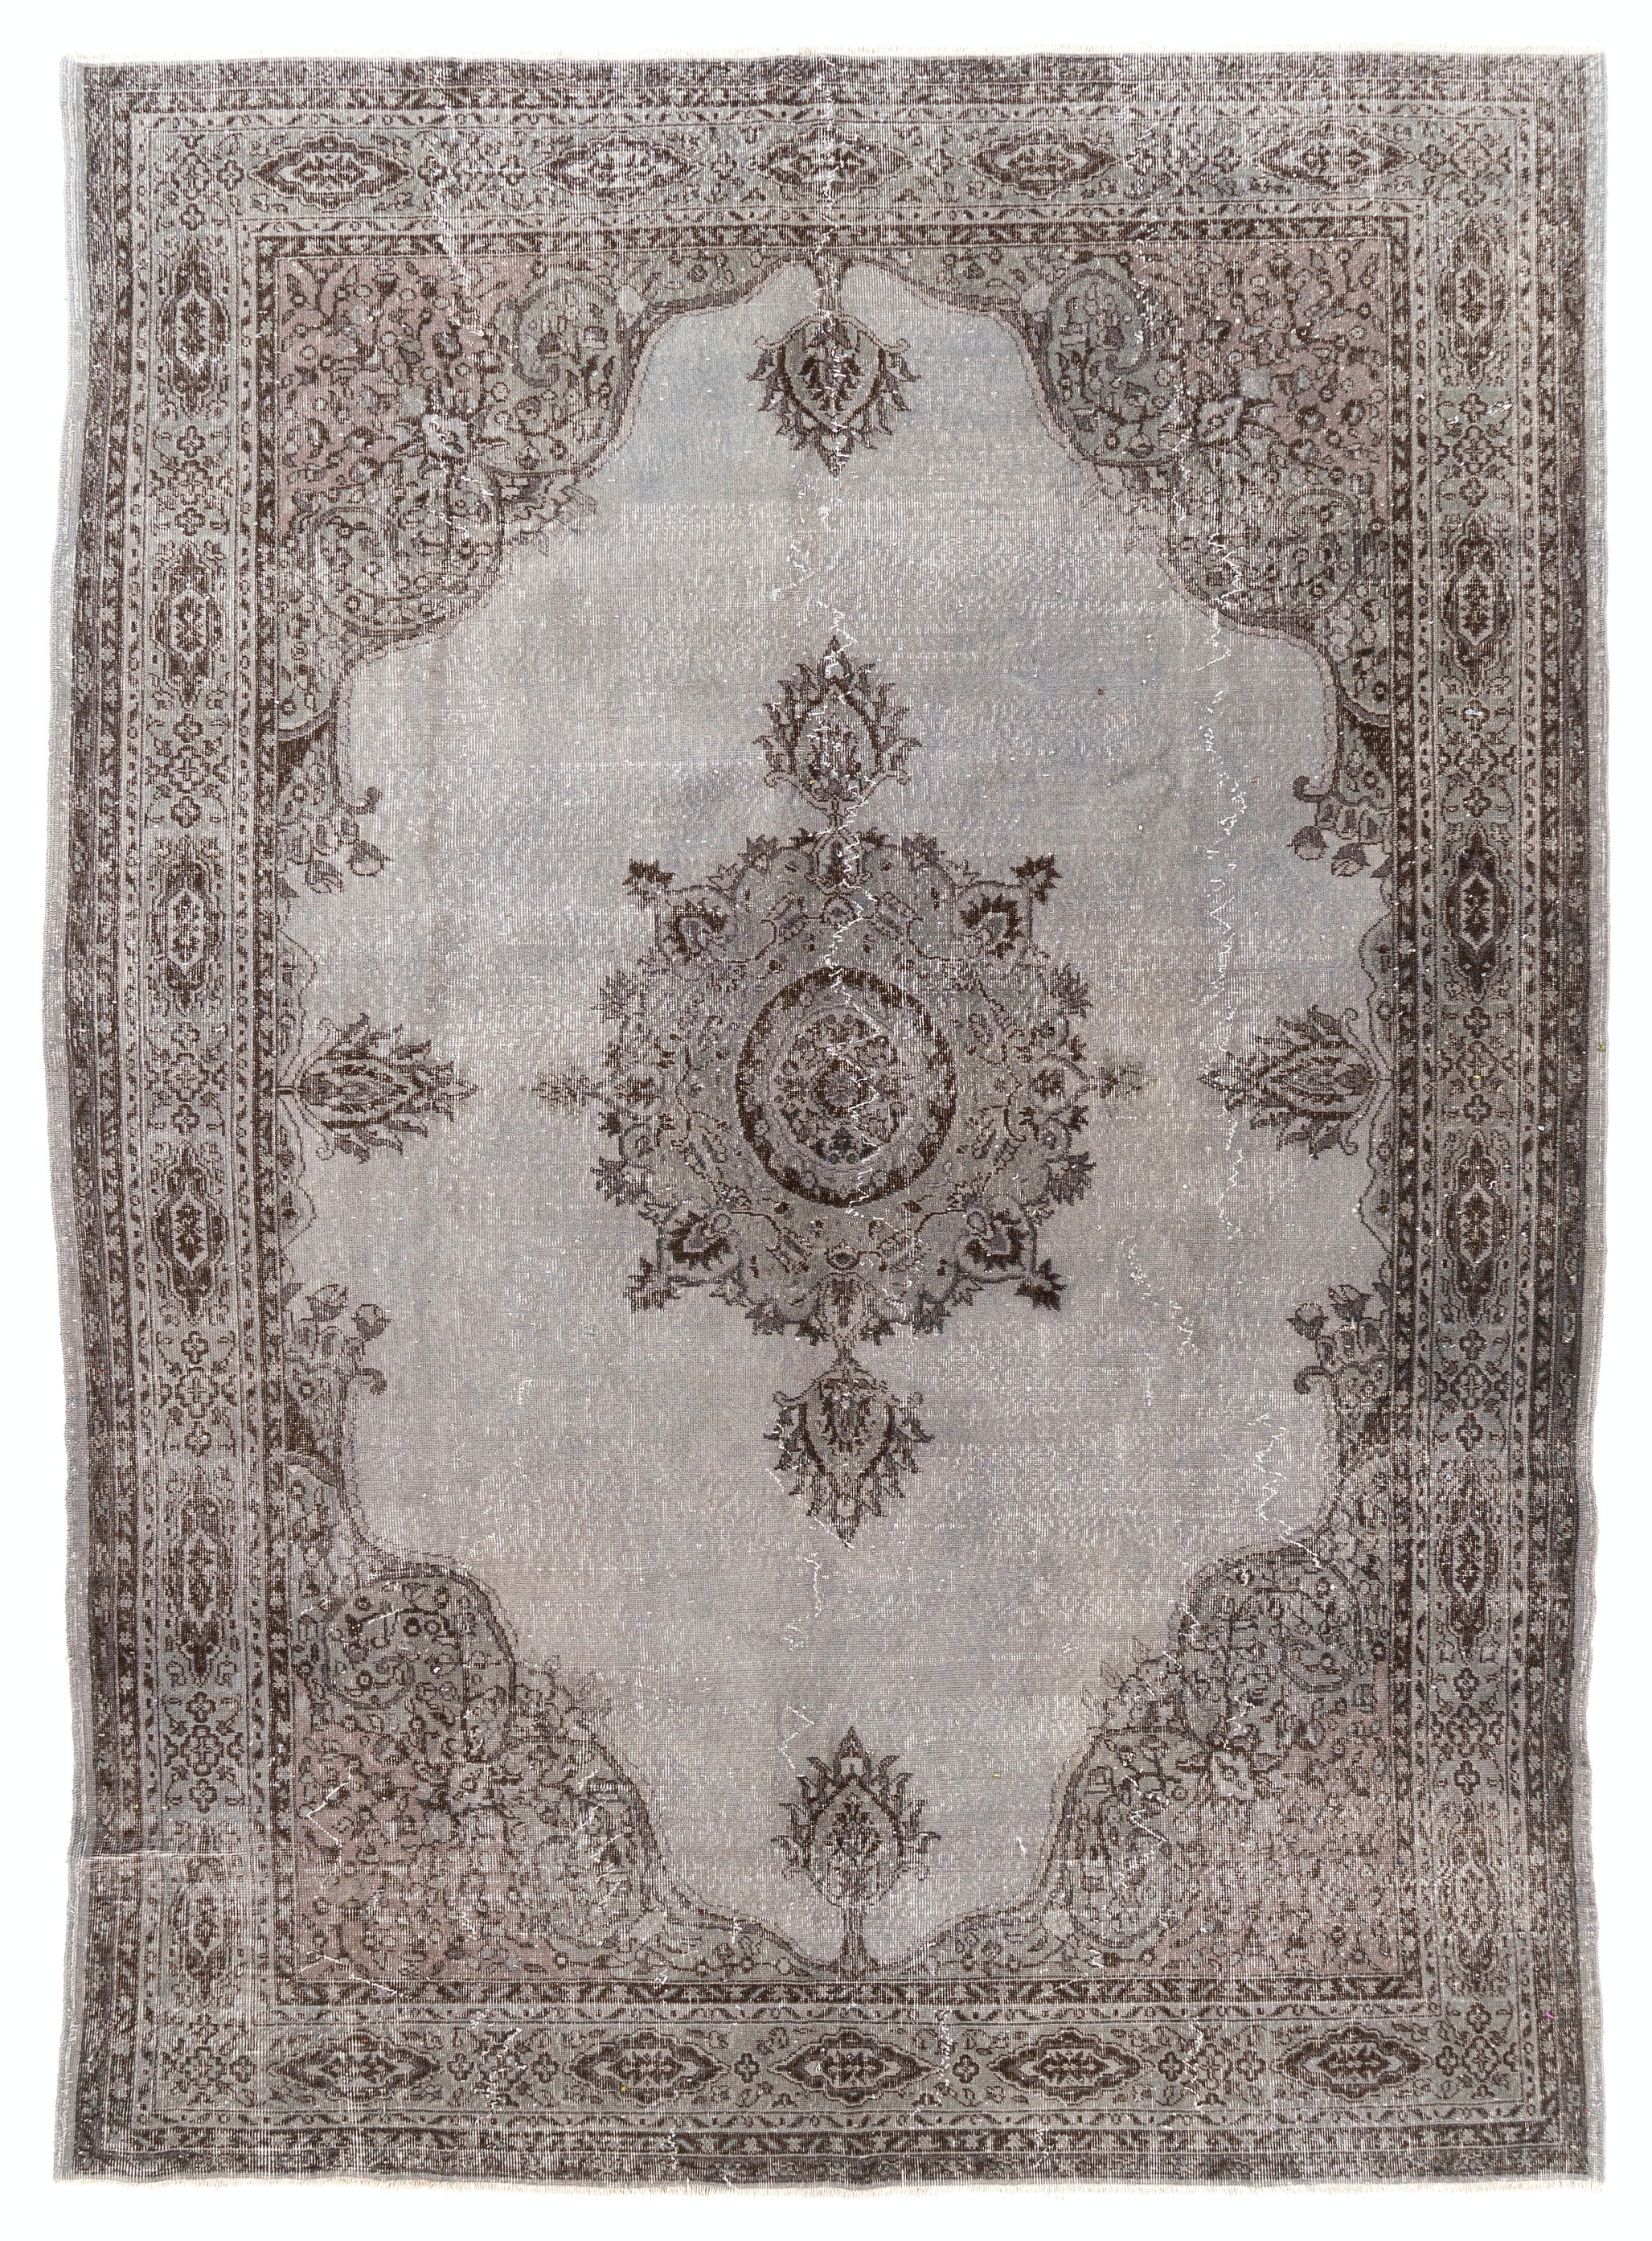 8.4x11.8 Ft Großer handgefertigter Vintage-Teppich aus grauer Wolle, handgeknüpft in der Türkei